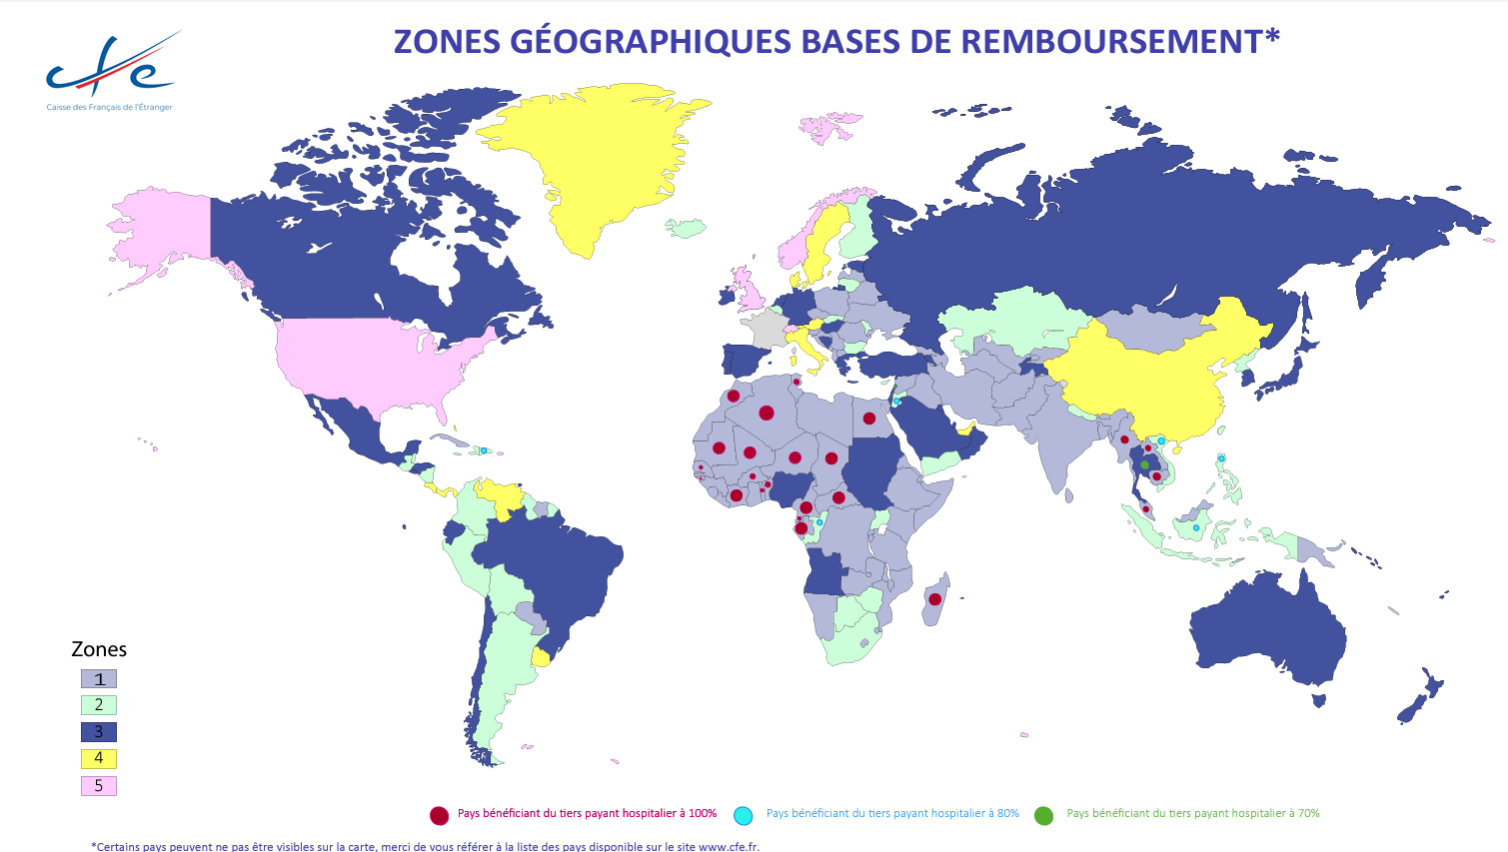 zones géographiques bases de remboursements de la CFE